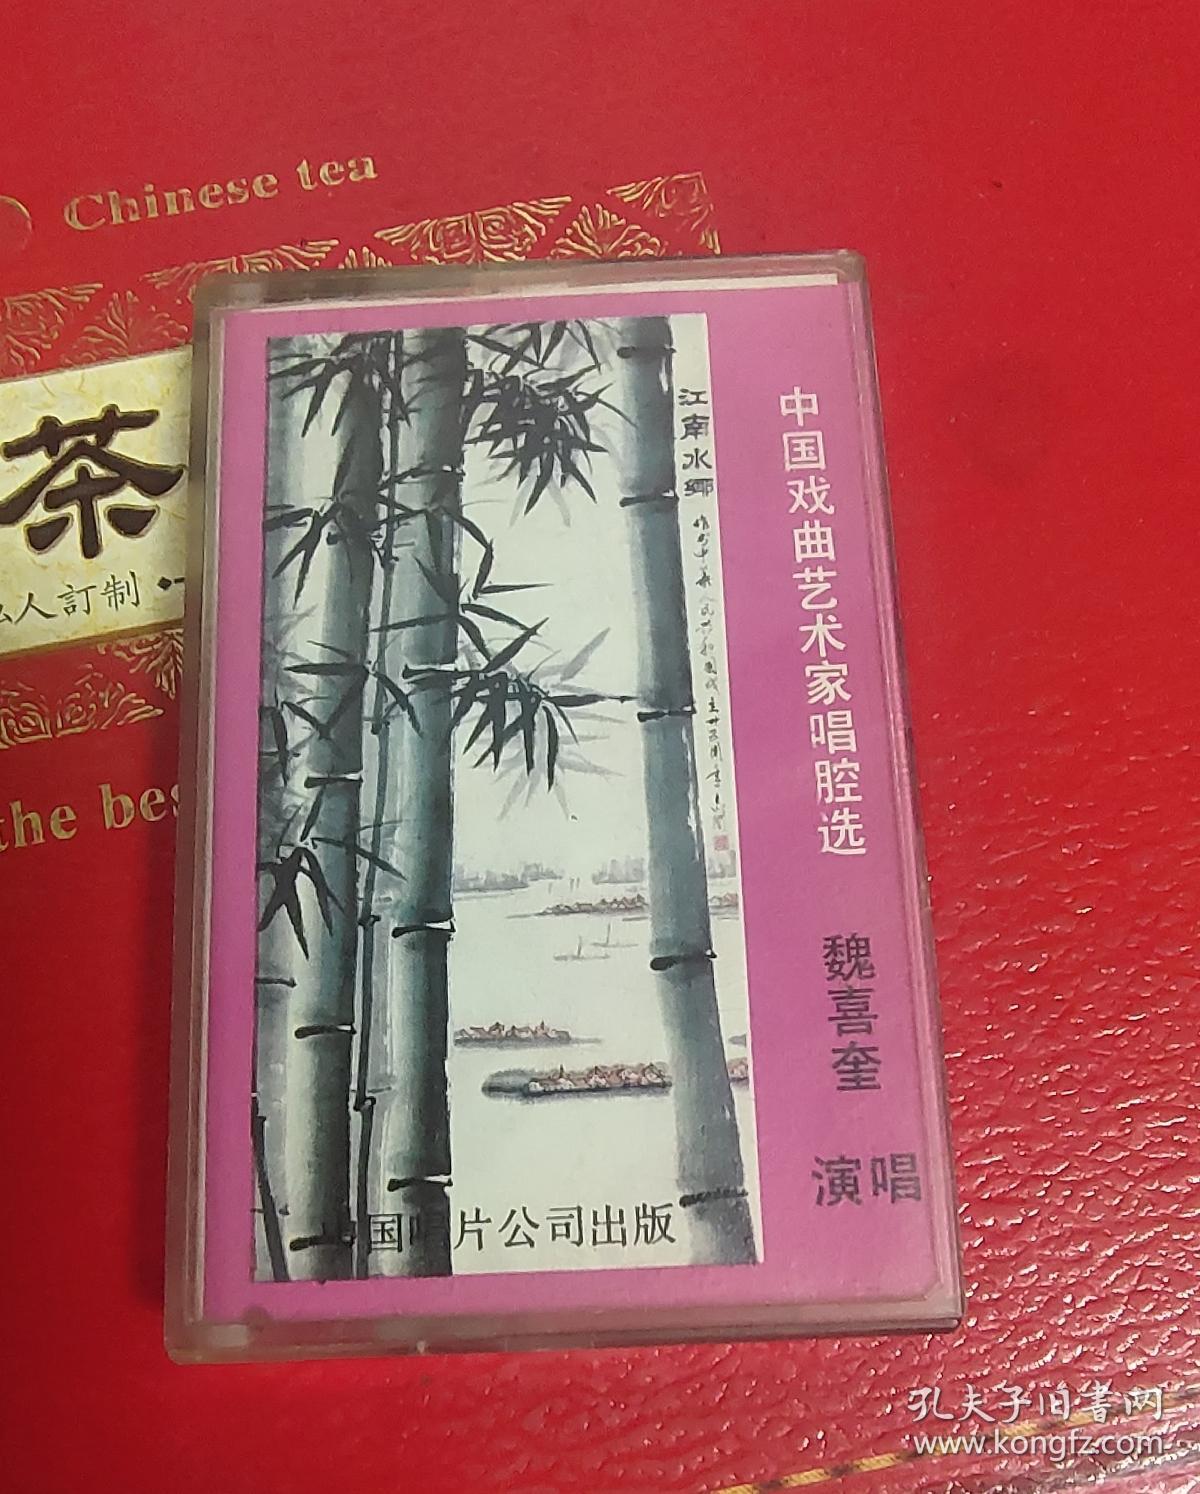 中国戏曲艺术家 磁带 魏喜奎 详情看图 220元 售后不退不换